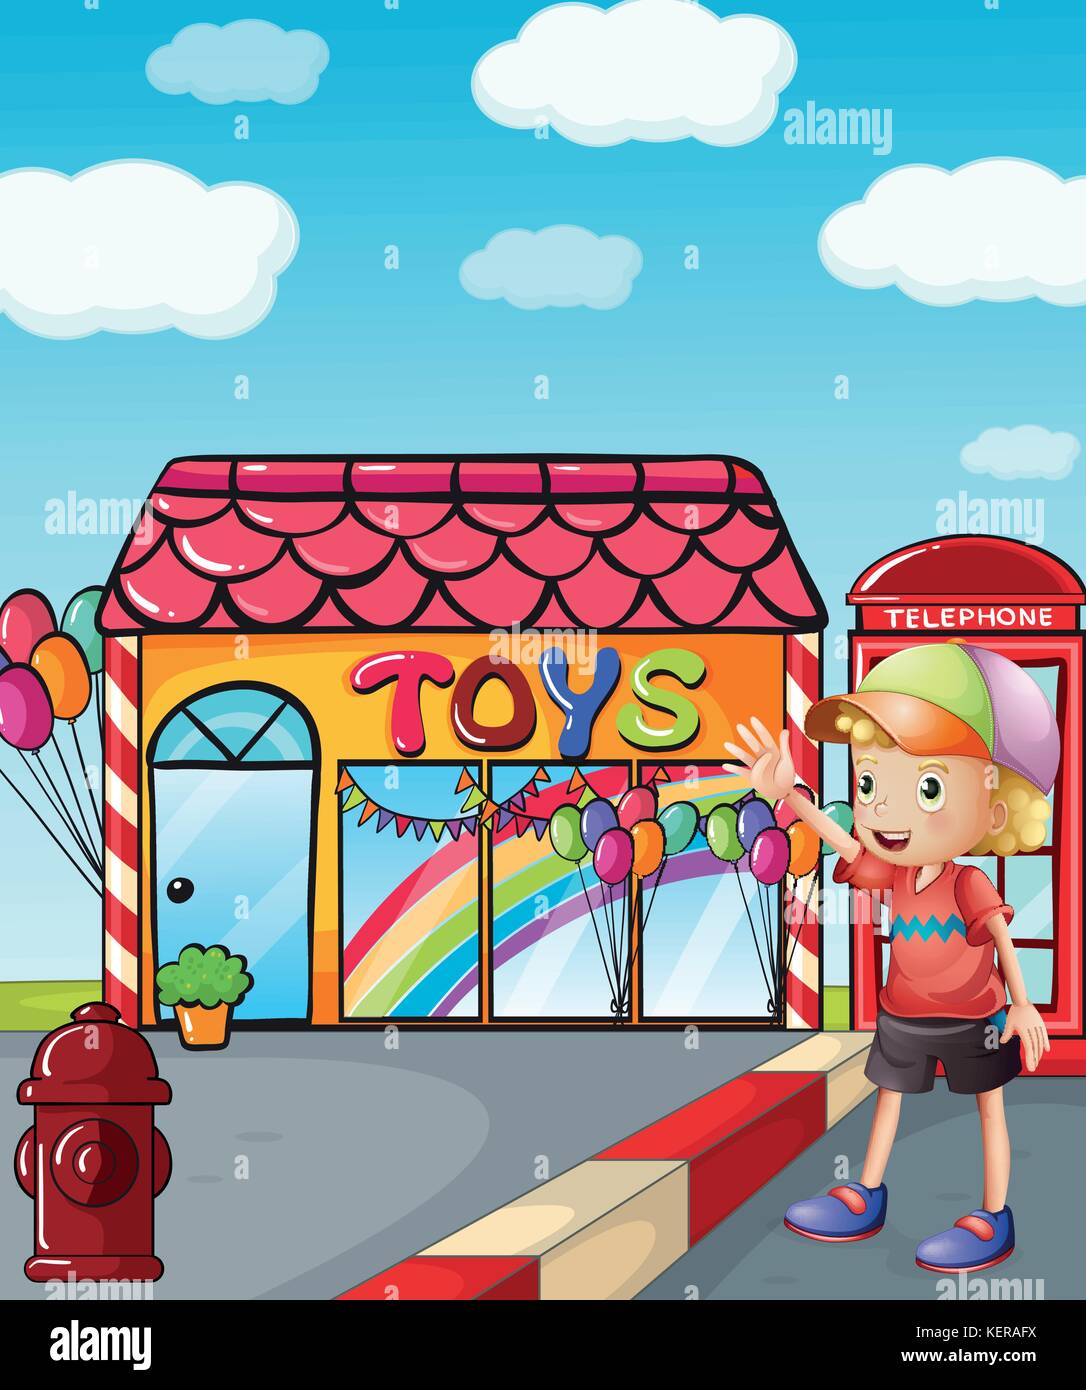 Illustrazione di un ragazzo che indossa un cappello sventolano al di fuori del negozio di giocattoli Illustrazione Vettoriale